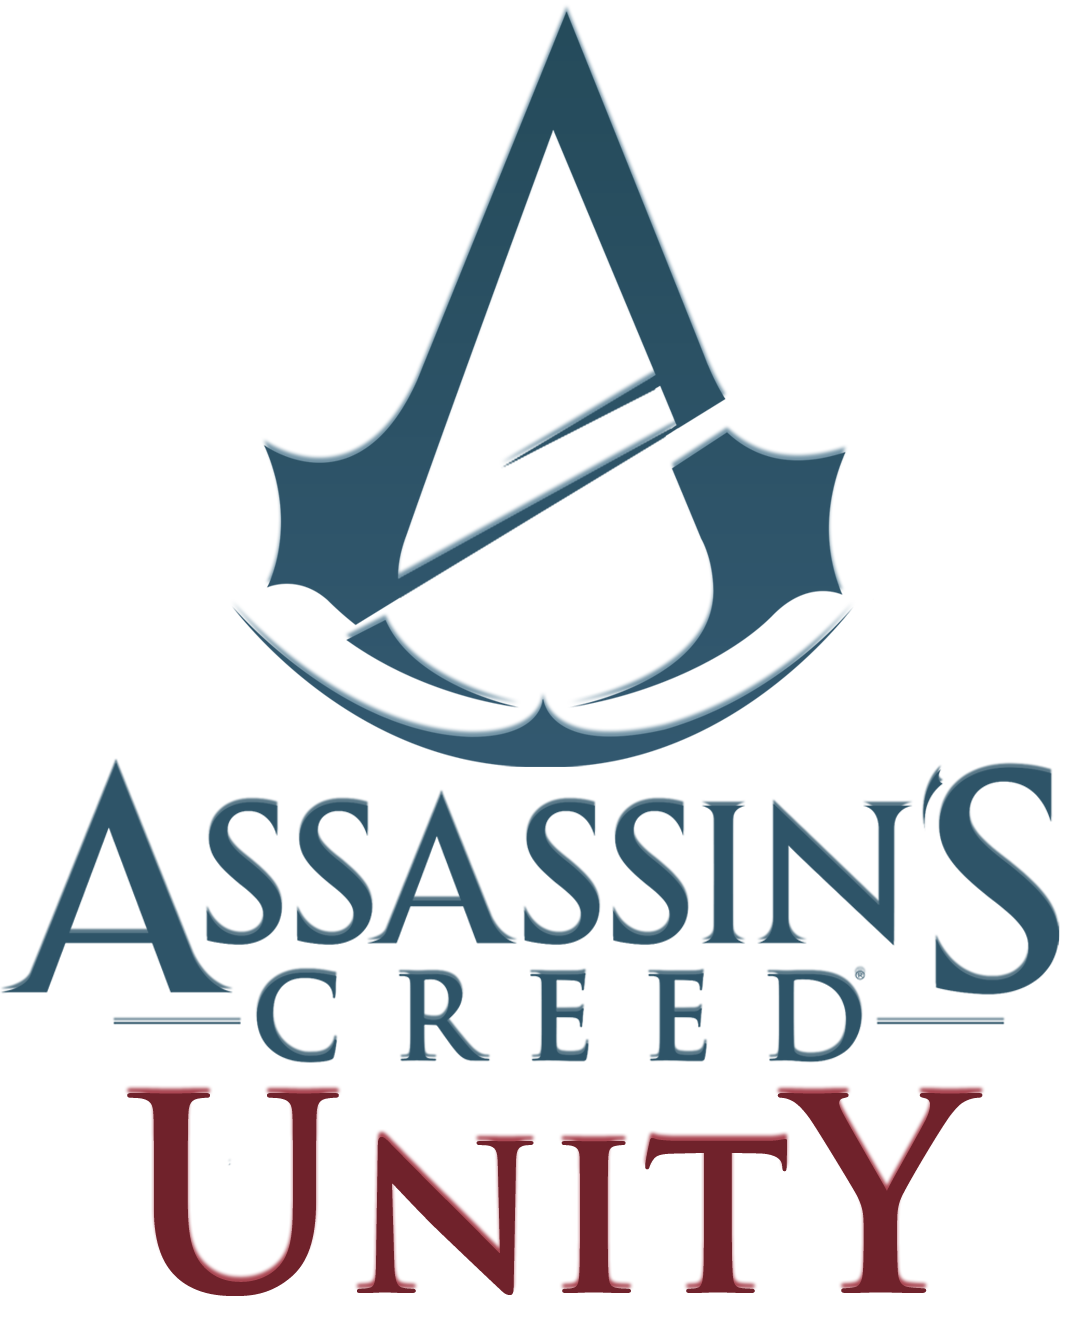 Assassin S Creed Unity アサシンクリード ユニティ 攻略wiki アットウィキ